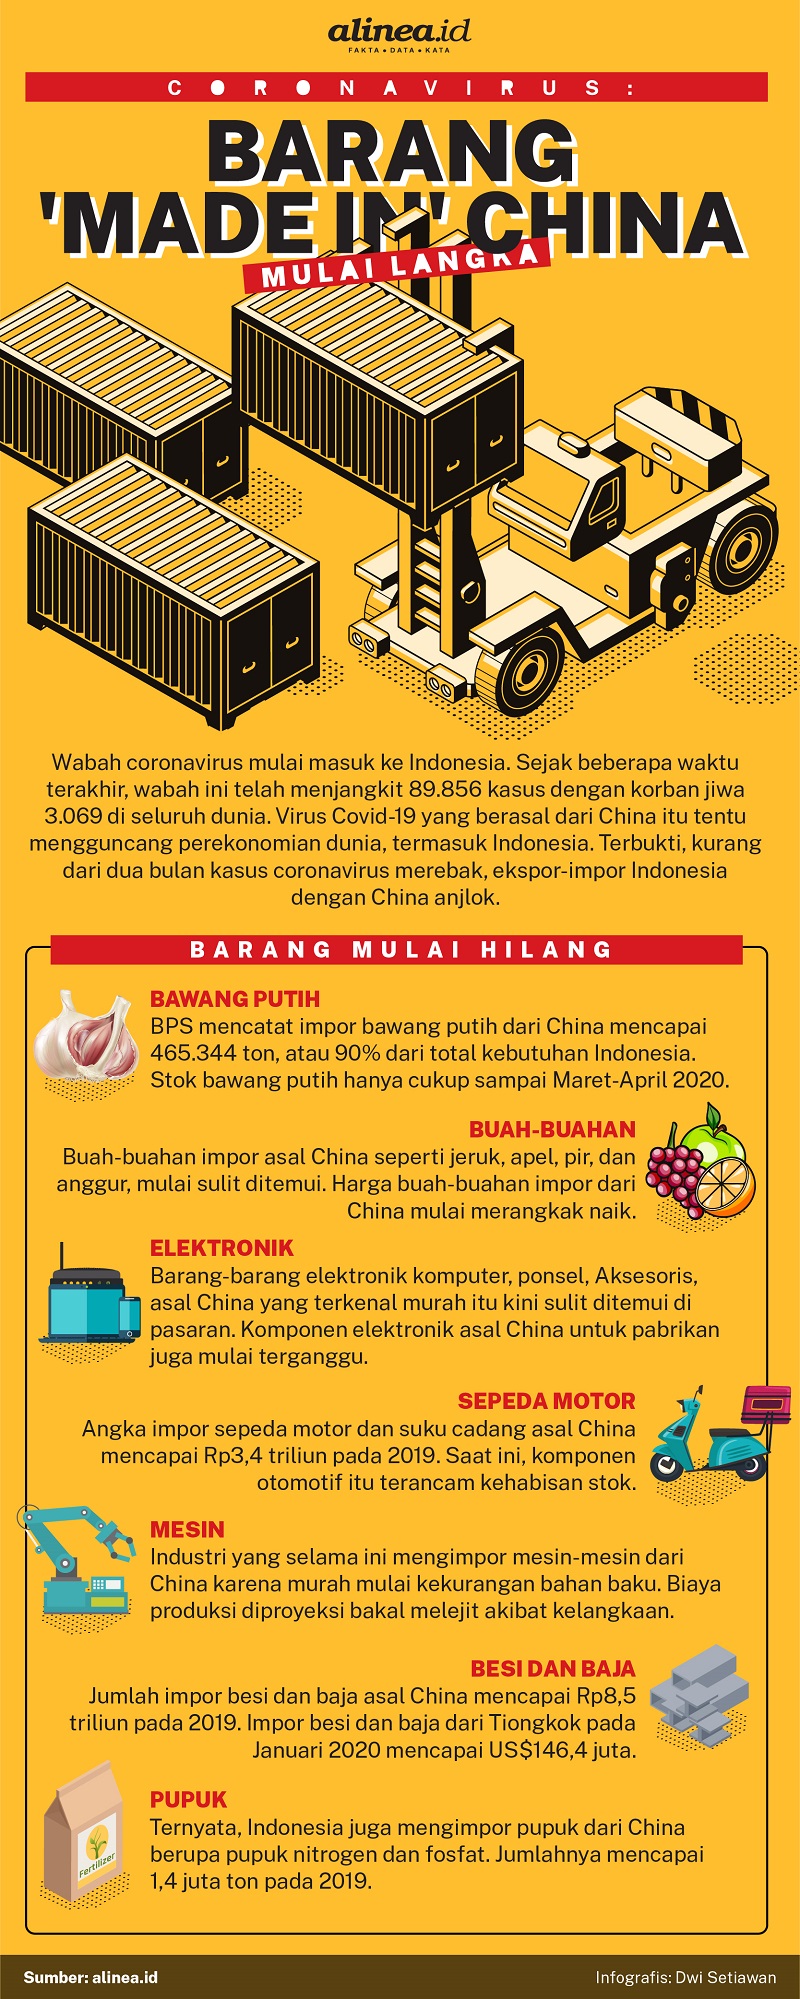 Infografik barang-barang asal China yang mulai langka setelah wabah virus corona. Alinea.id/Dwi Setiawan